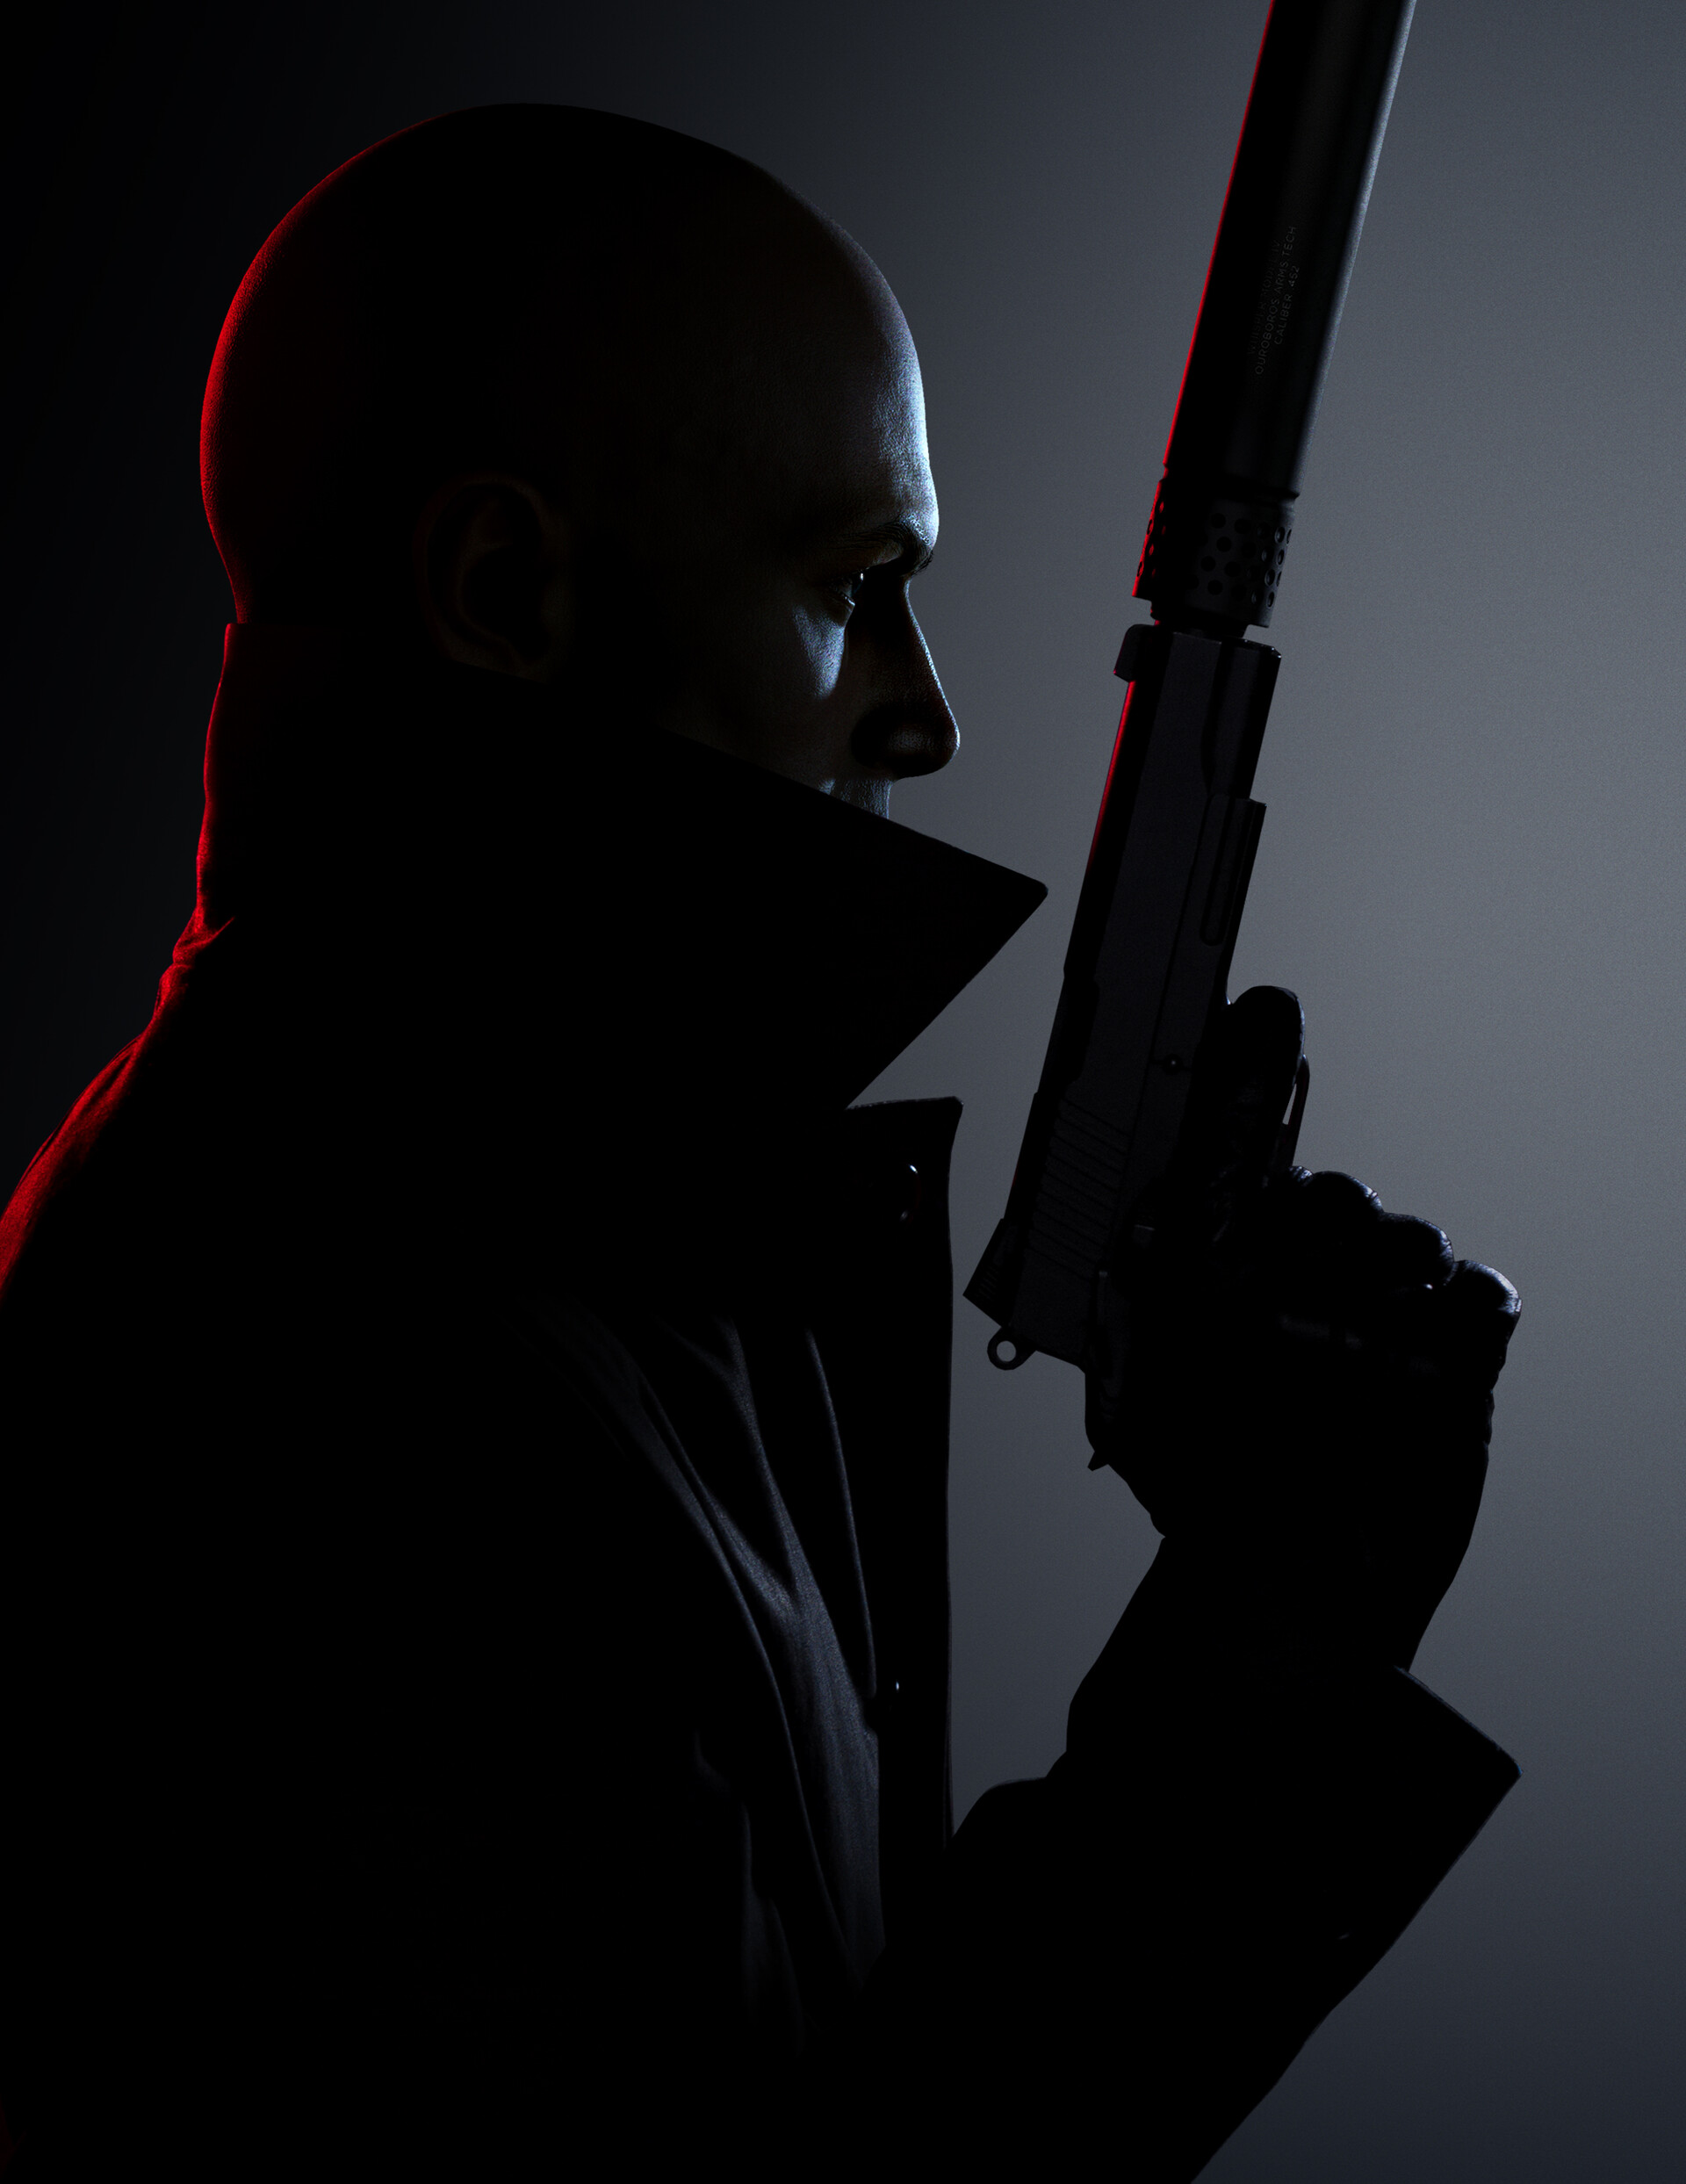 《杀手3》预告片概念原画 冷色调画风氛围阴暗